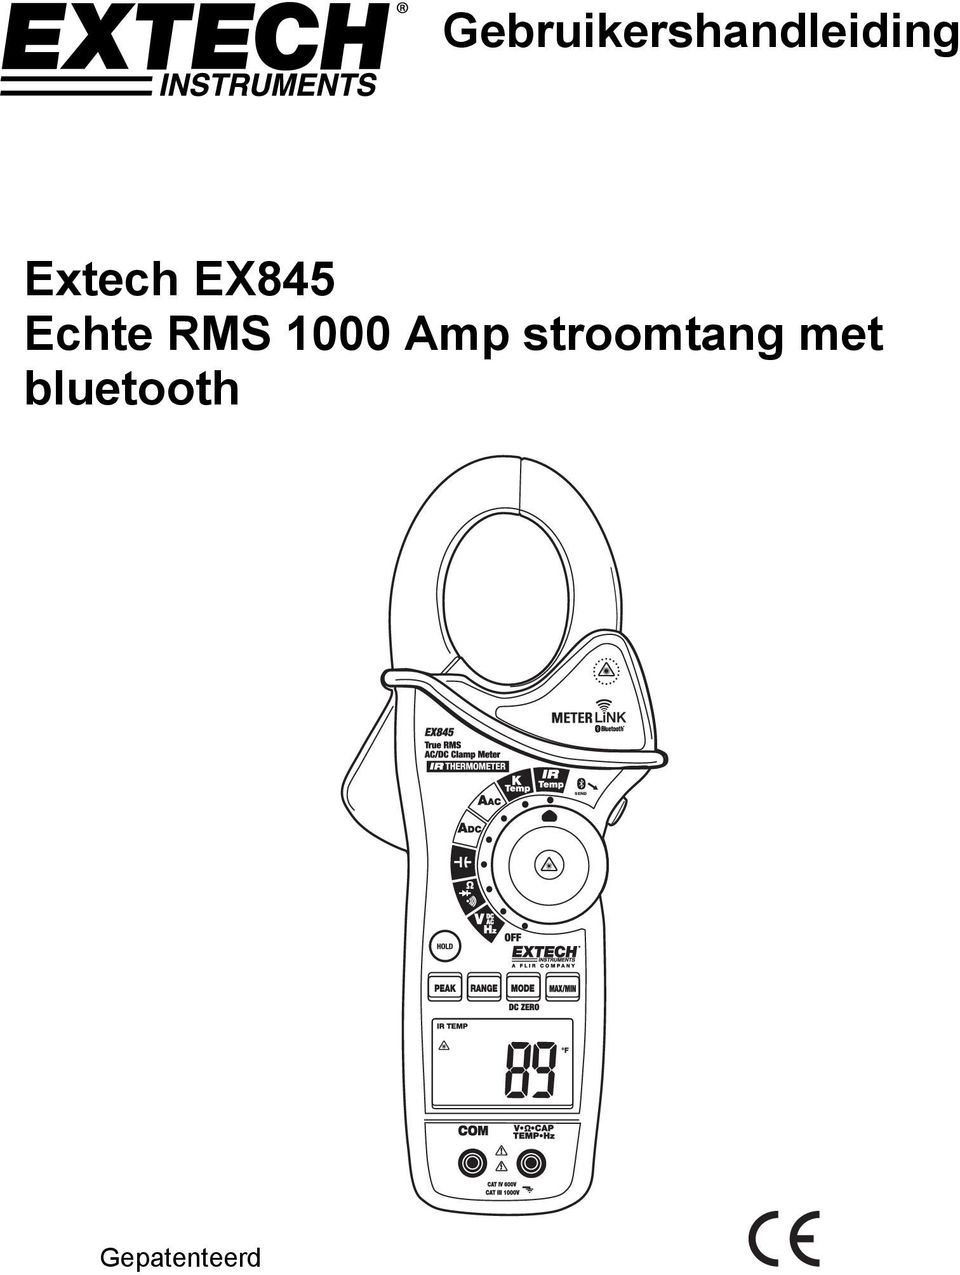 Extech EX845 Echte RMS